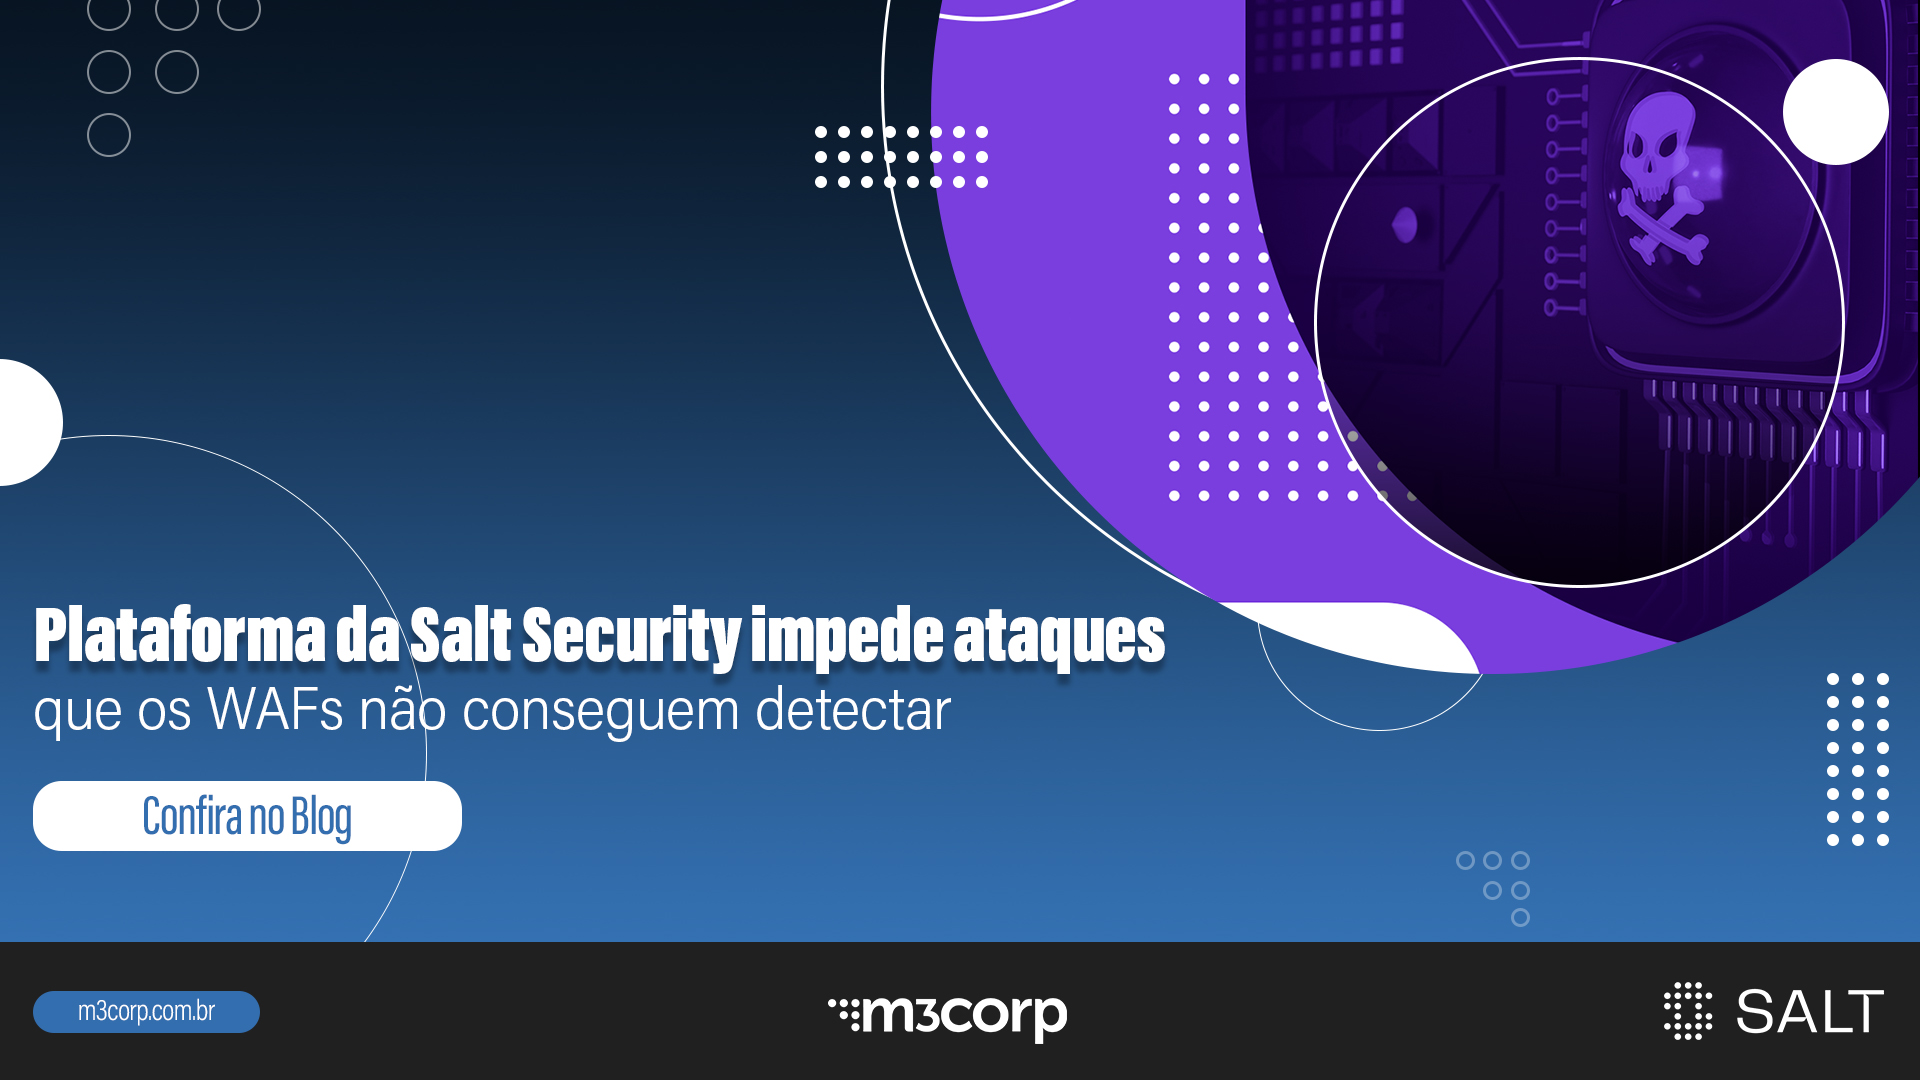 Plataforma da Salt Security impede ataques que os WAFs não conseguem detectar